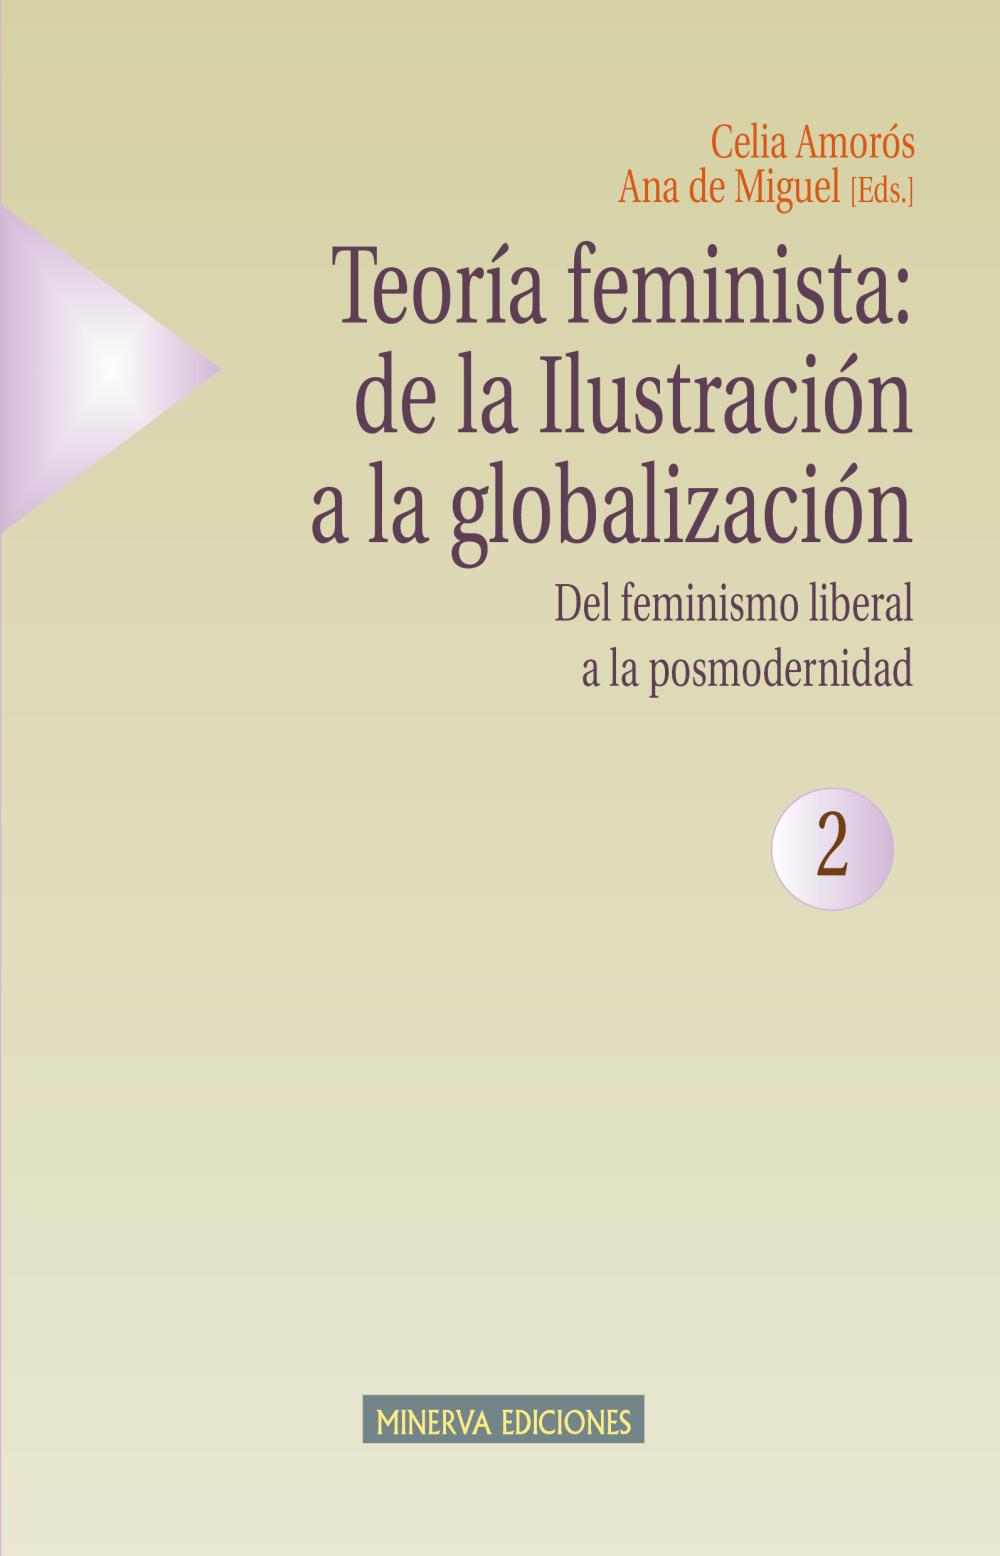 Teoría feminista: de la Ilustración a la globalización (2)